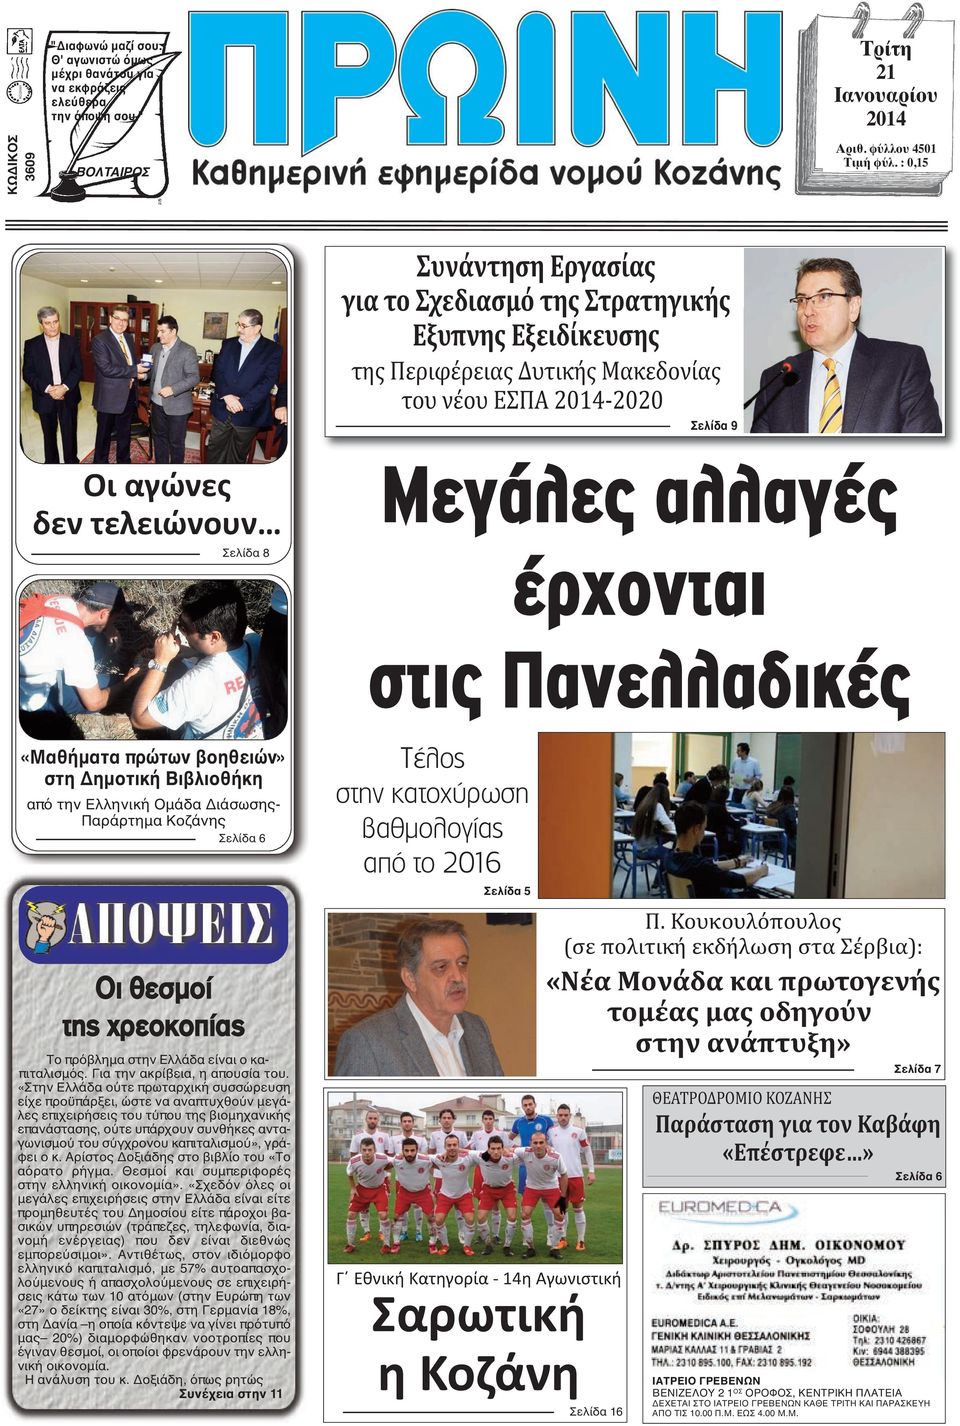 έρχονται στις Πανελλαδικές «Μαθήματα πρώτων βοηθειών» στη Δημοτική Βιβλιοθήκη από την Ελληνική Ομάδα Διάσωσης- Παράρτημα Κοζάνης Σελίδα 6 Οι θεσμοί της χρεοκοπίας Το πρόβλημα στην Ελλάδα είναι ο